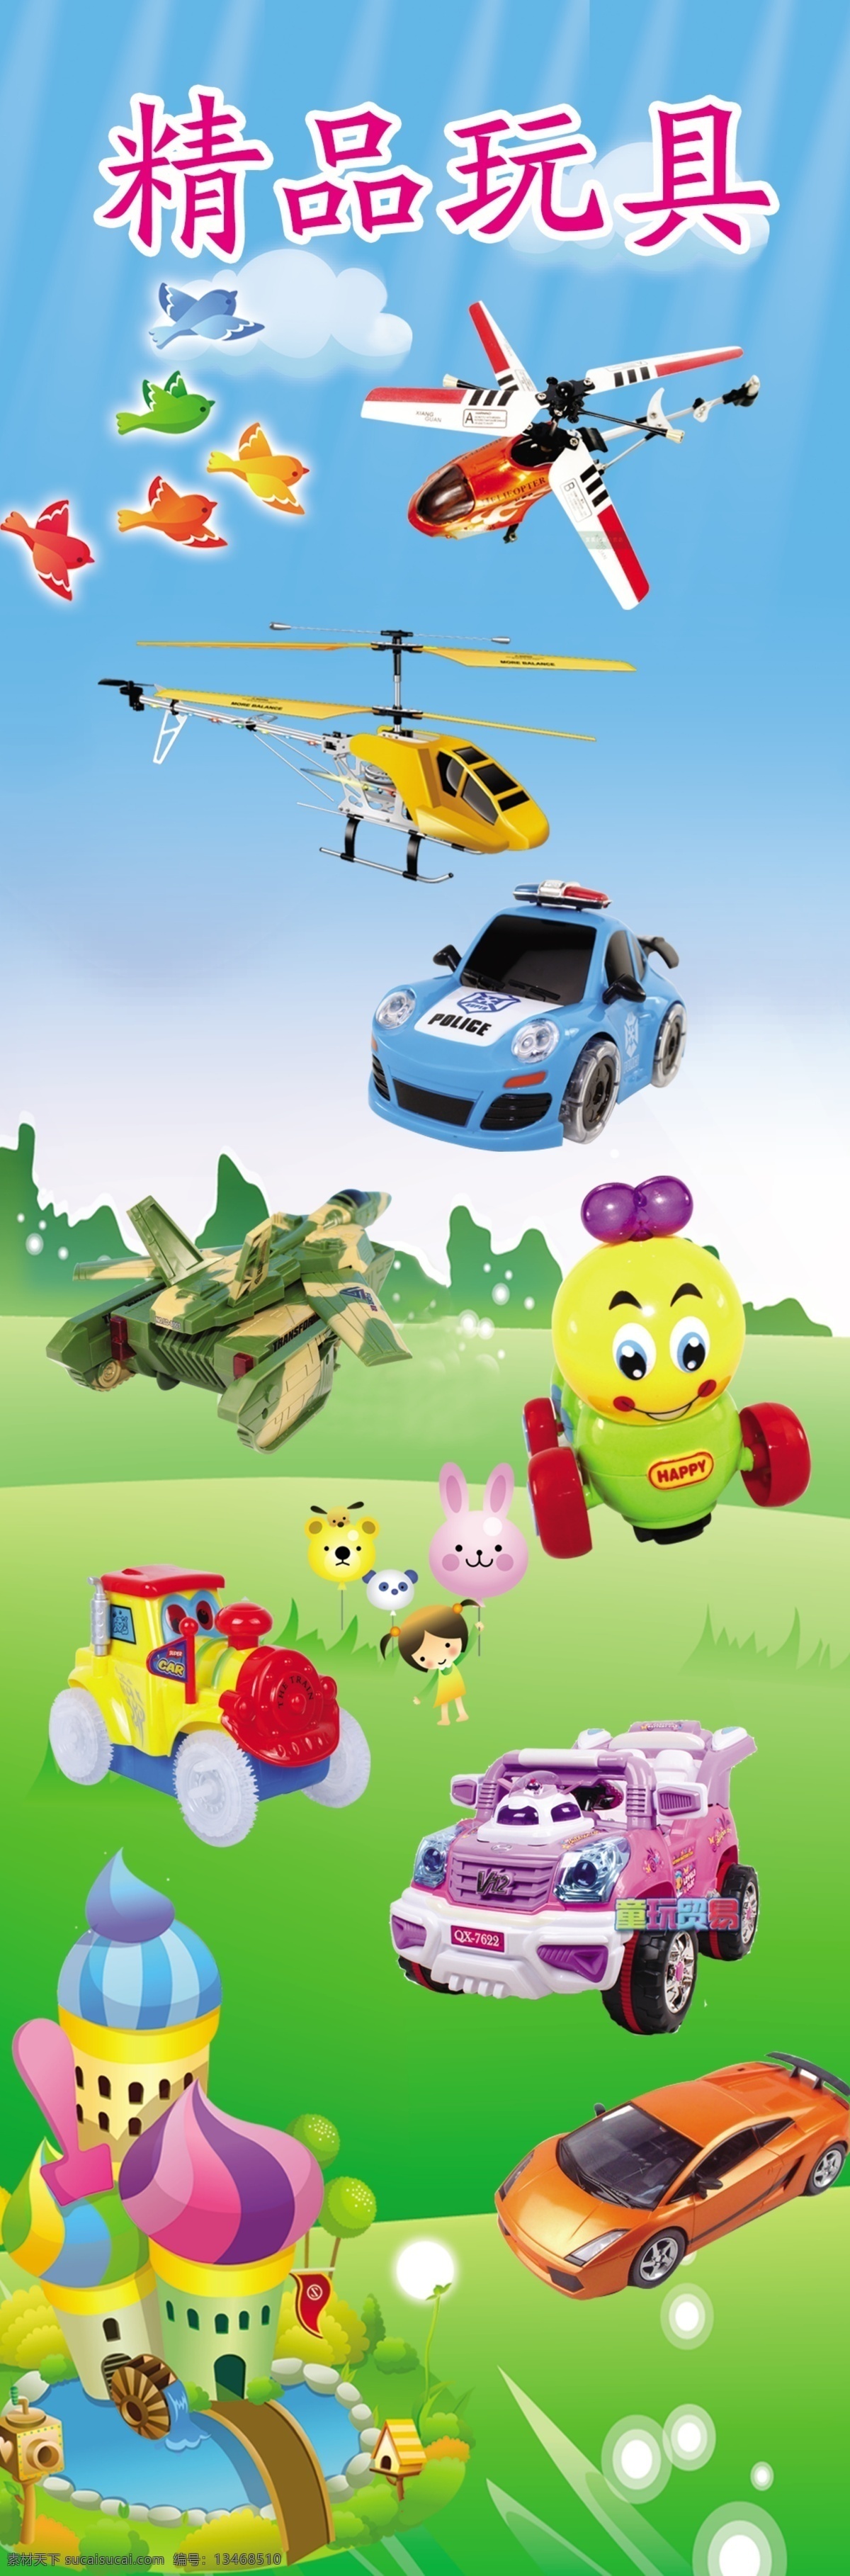 精品玩具 玩具 电动玩具 儿童玩具 玩具飞机 玩具汽车 展板模板 广告设计模板 源文件